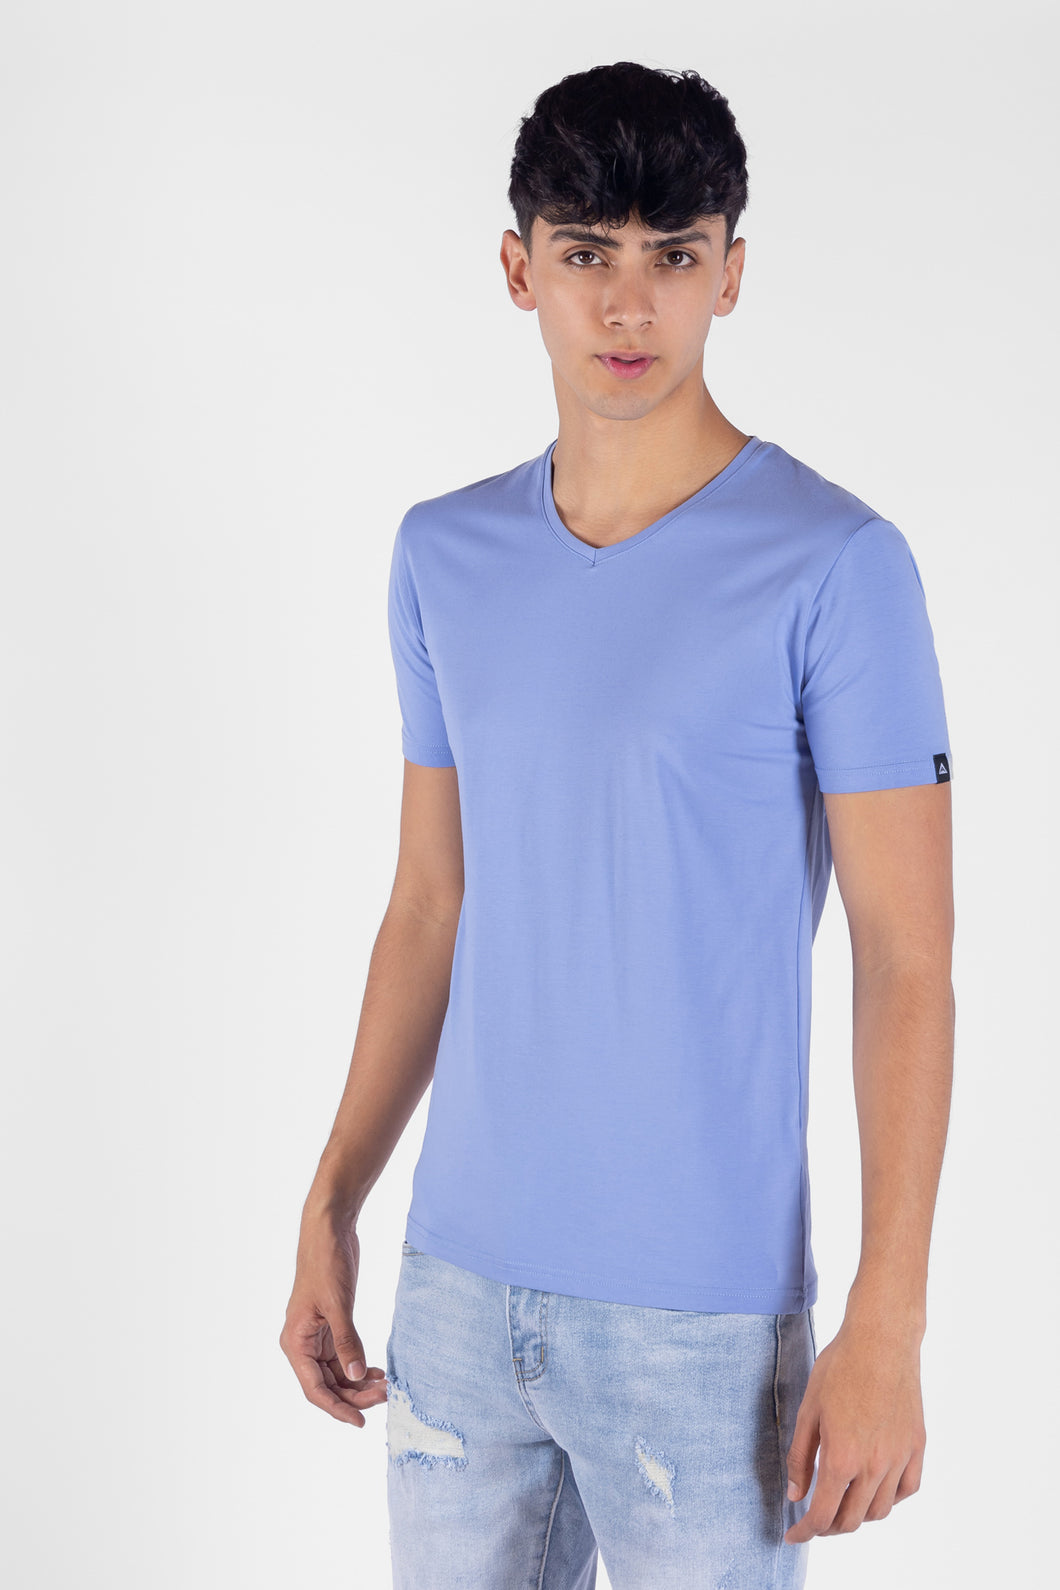 Camiseta V Color Azul Claro Para Hombre